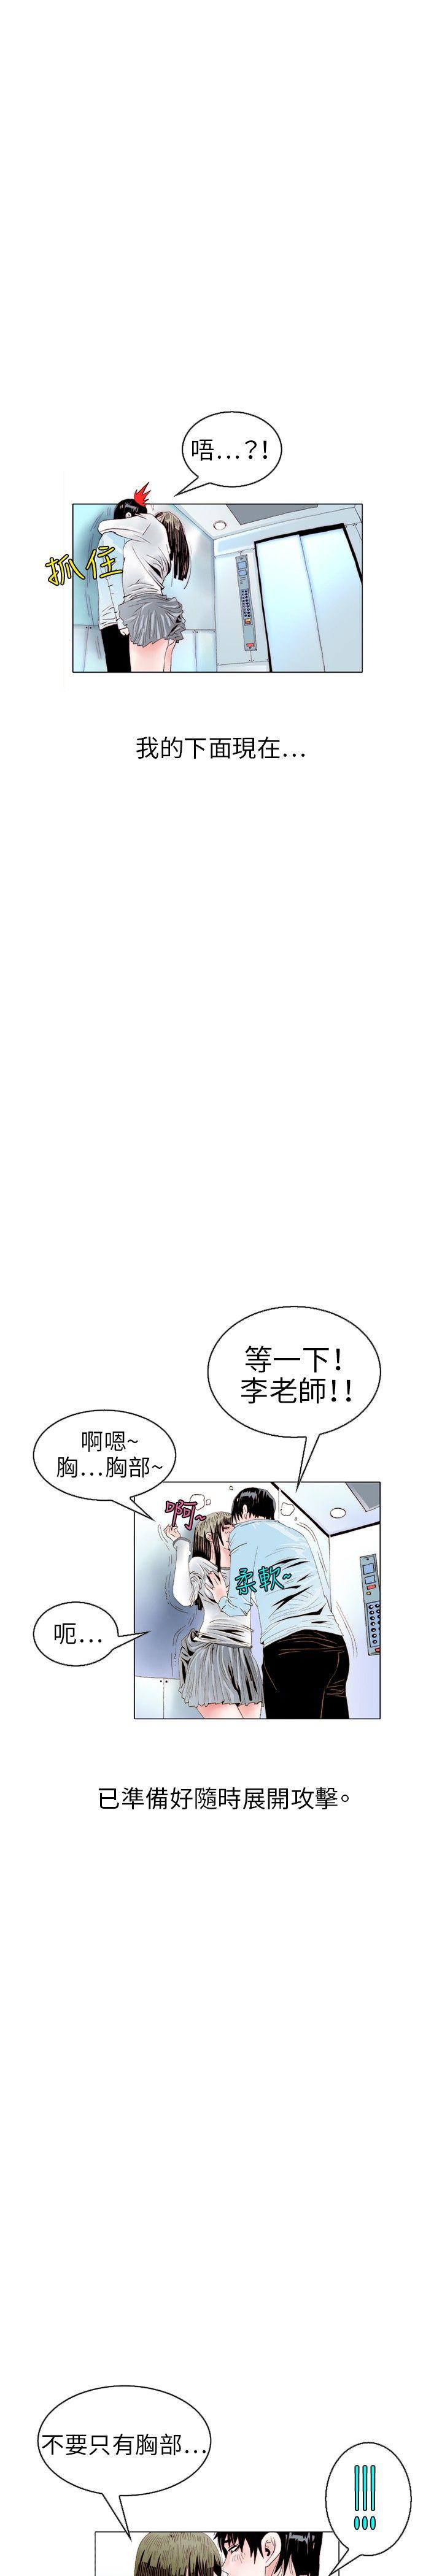 秘密Story  诱惑(2) 漫画图片11.jpg